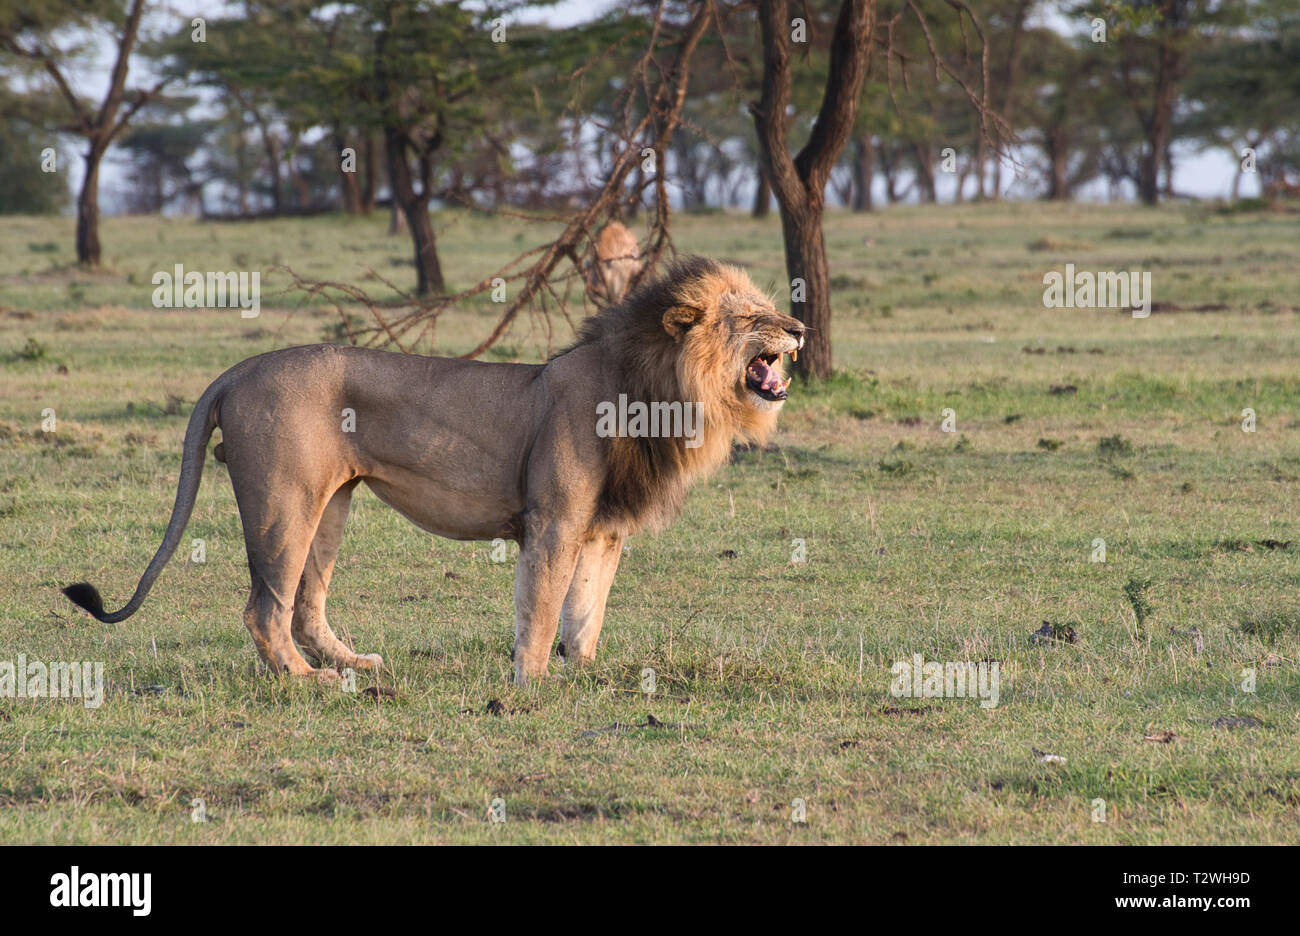 Lion (Panthera leo) adulte mâle, tôt le matin, l'annonce de son territoire contre les hyènes en arrière-plan Banque D'Images